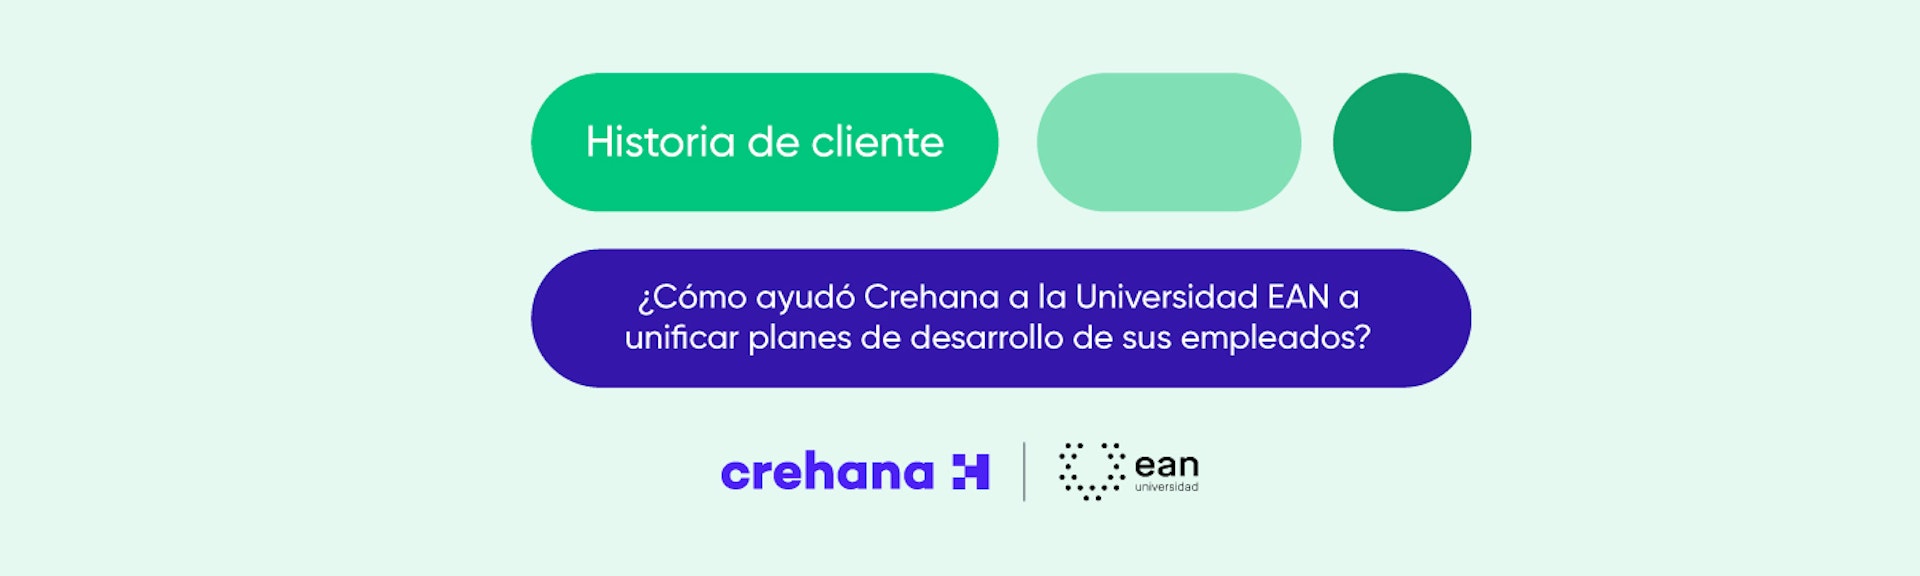 ¿Cómo ayudó Crehana a la Universidad EAN a unificar los planes de desarrollo de sus empleados?